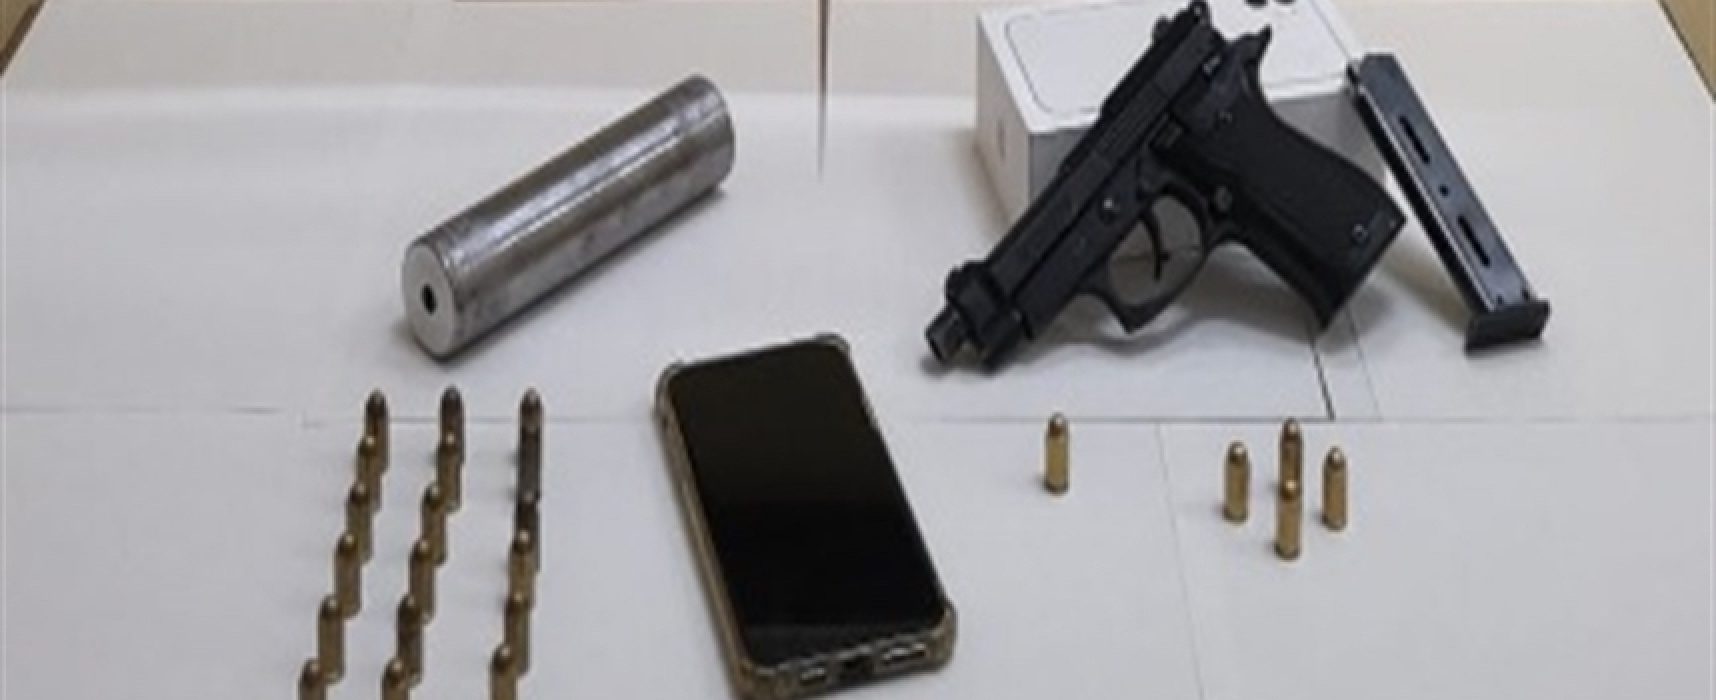 Arrestato a Bisceglie un uomo per detenzione illegale di arma e munizioni